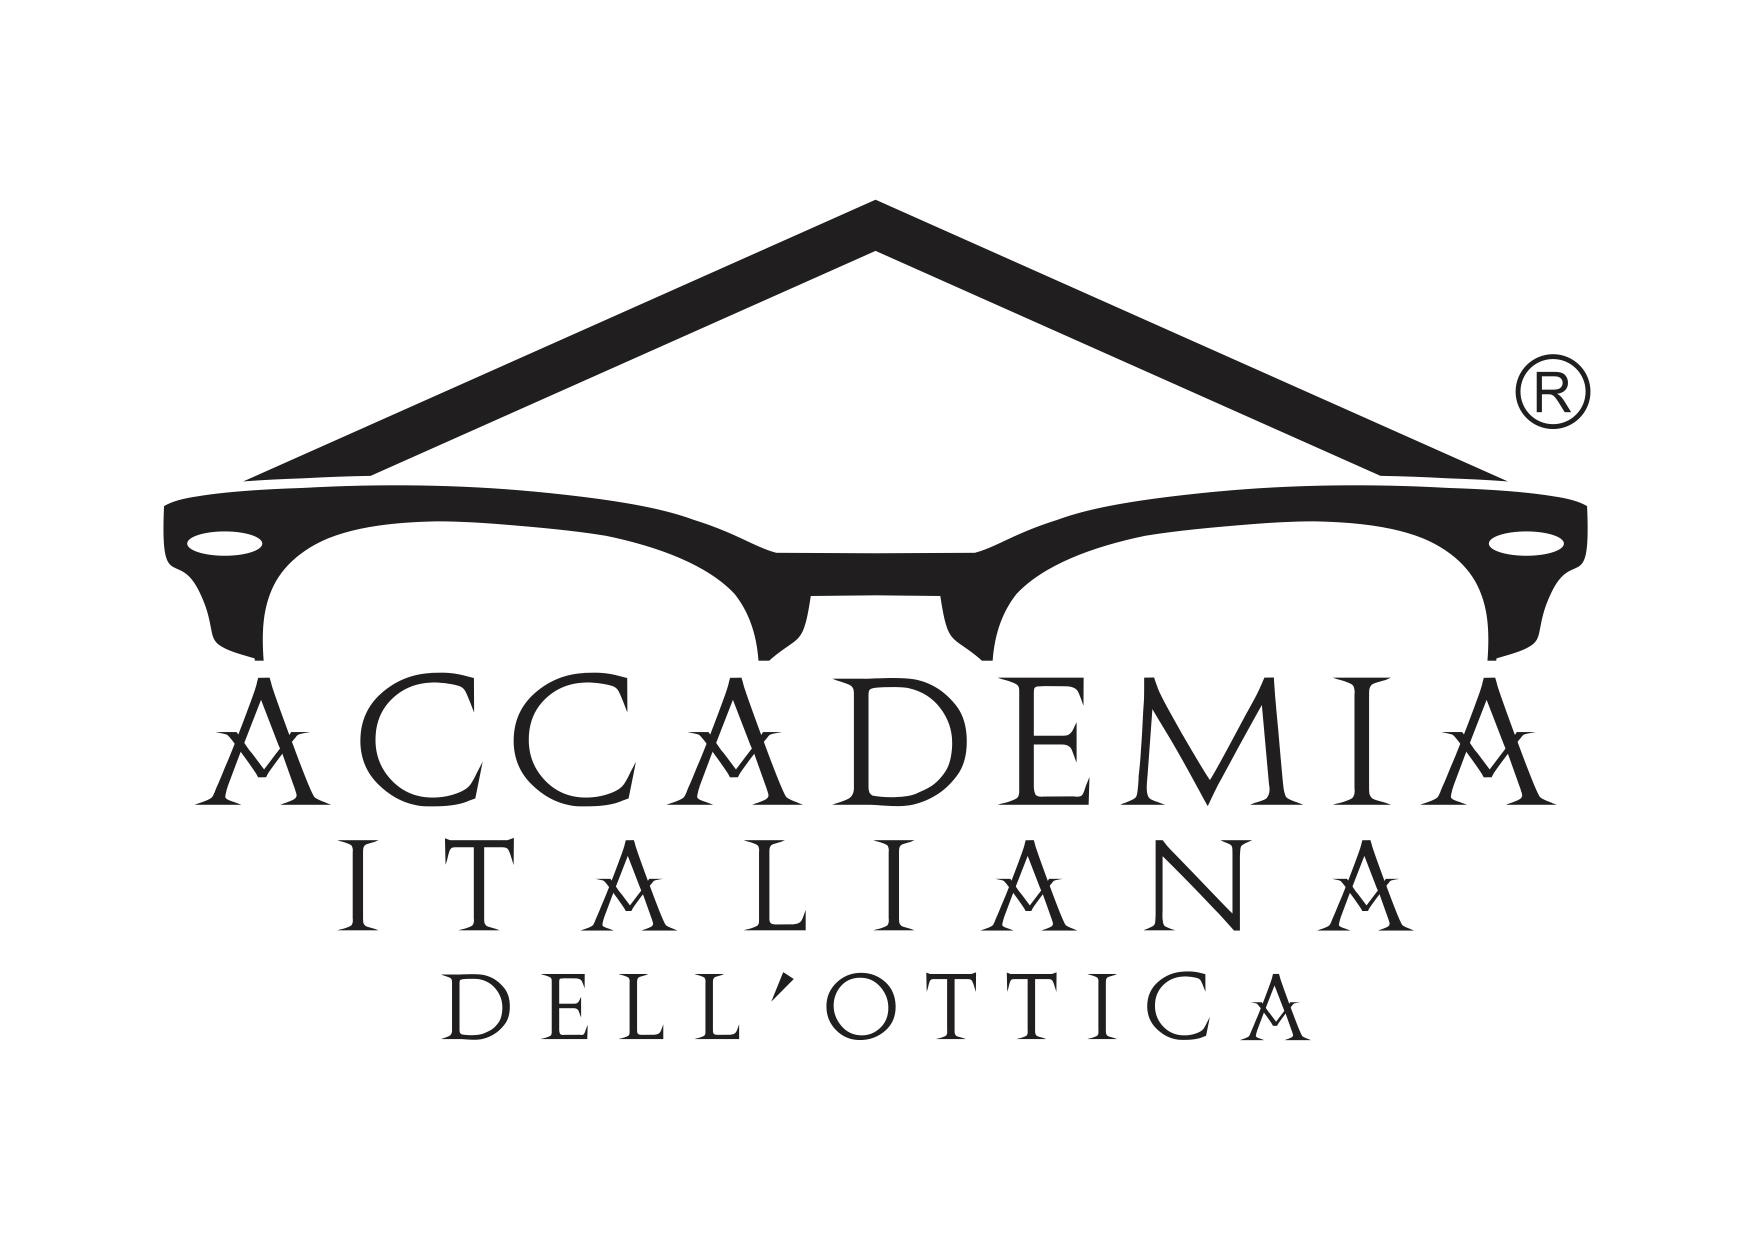 Accademia-italiana-dellottica